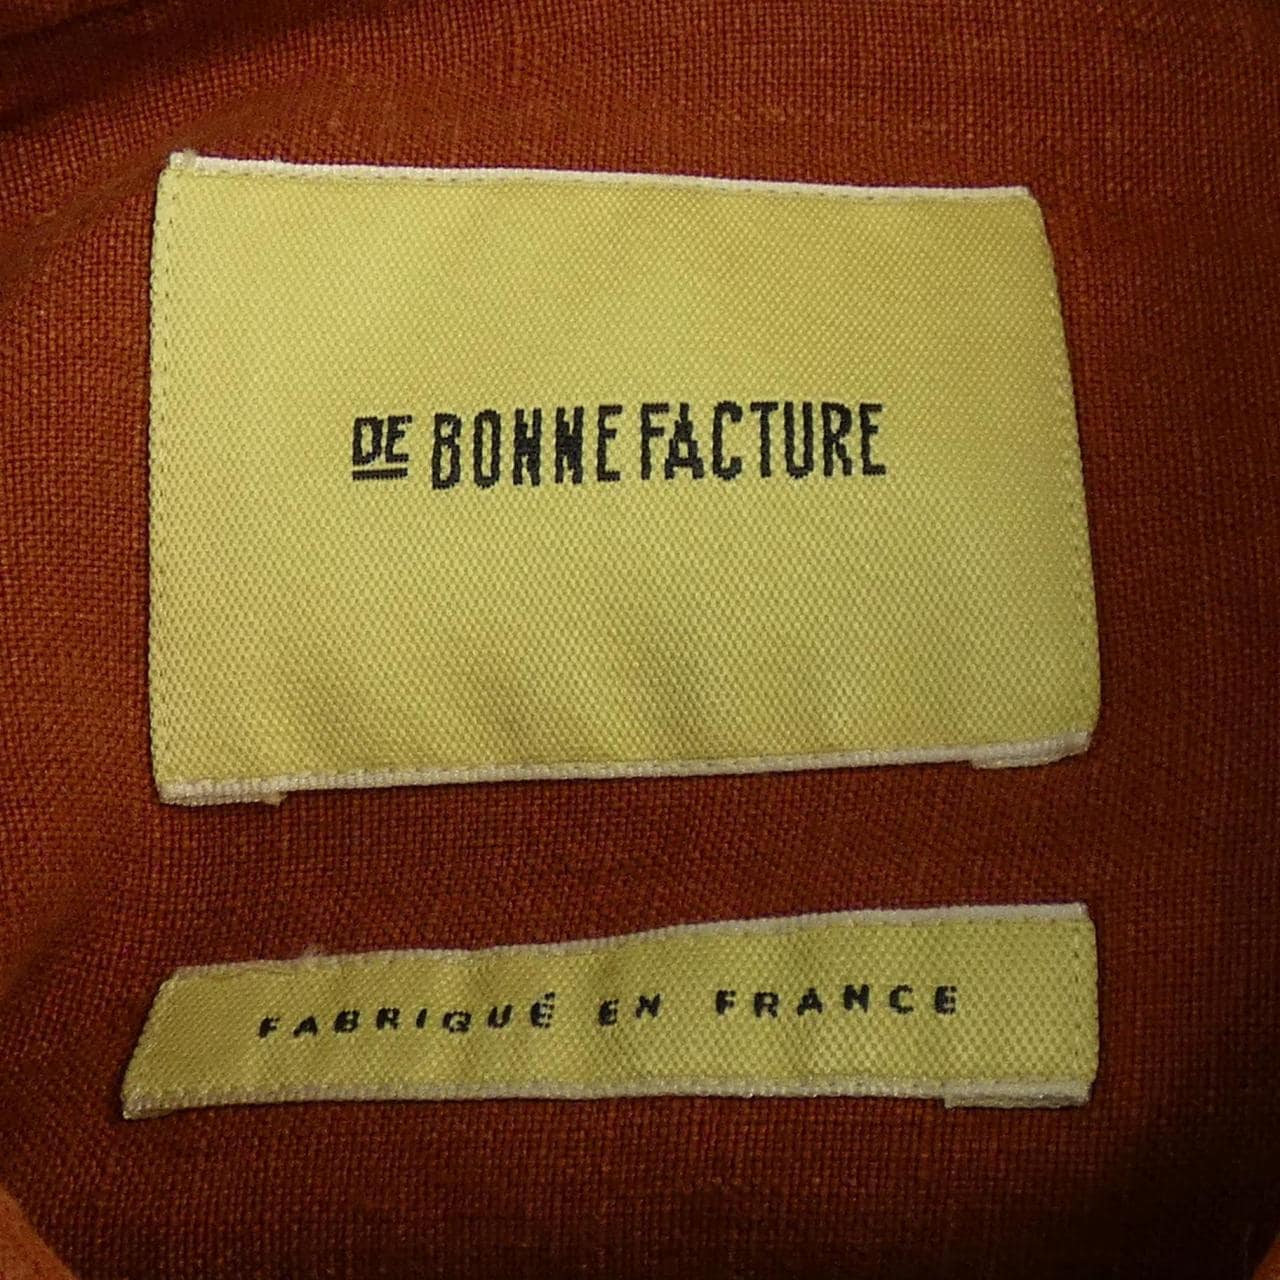 デボンファクチュール DE BONNE FACTURE シャツ